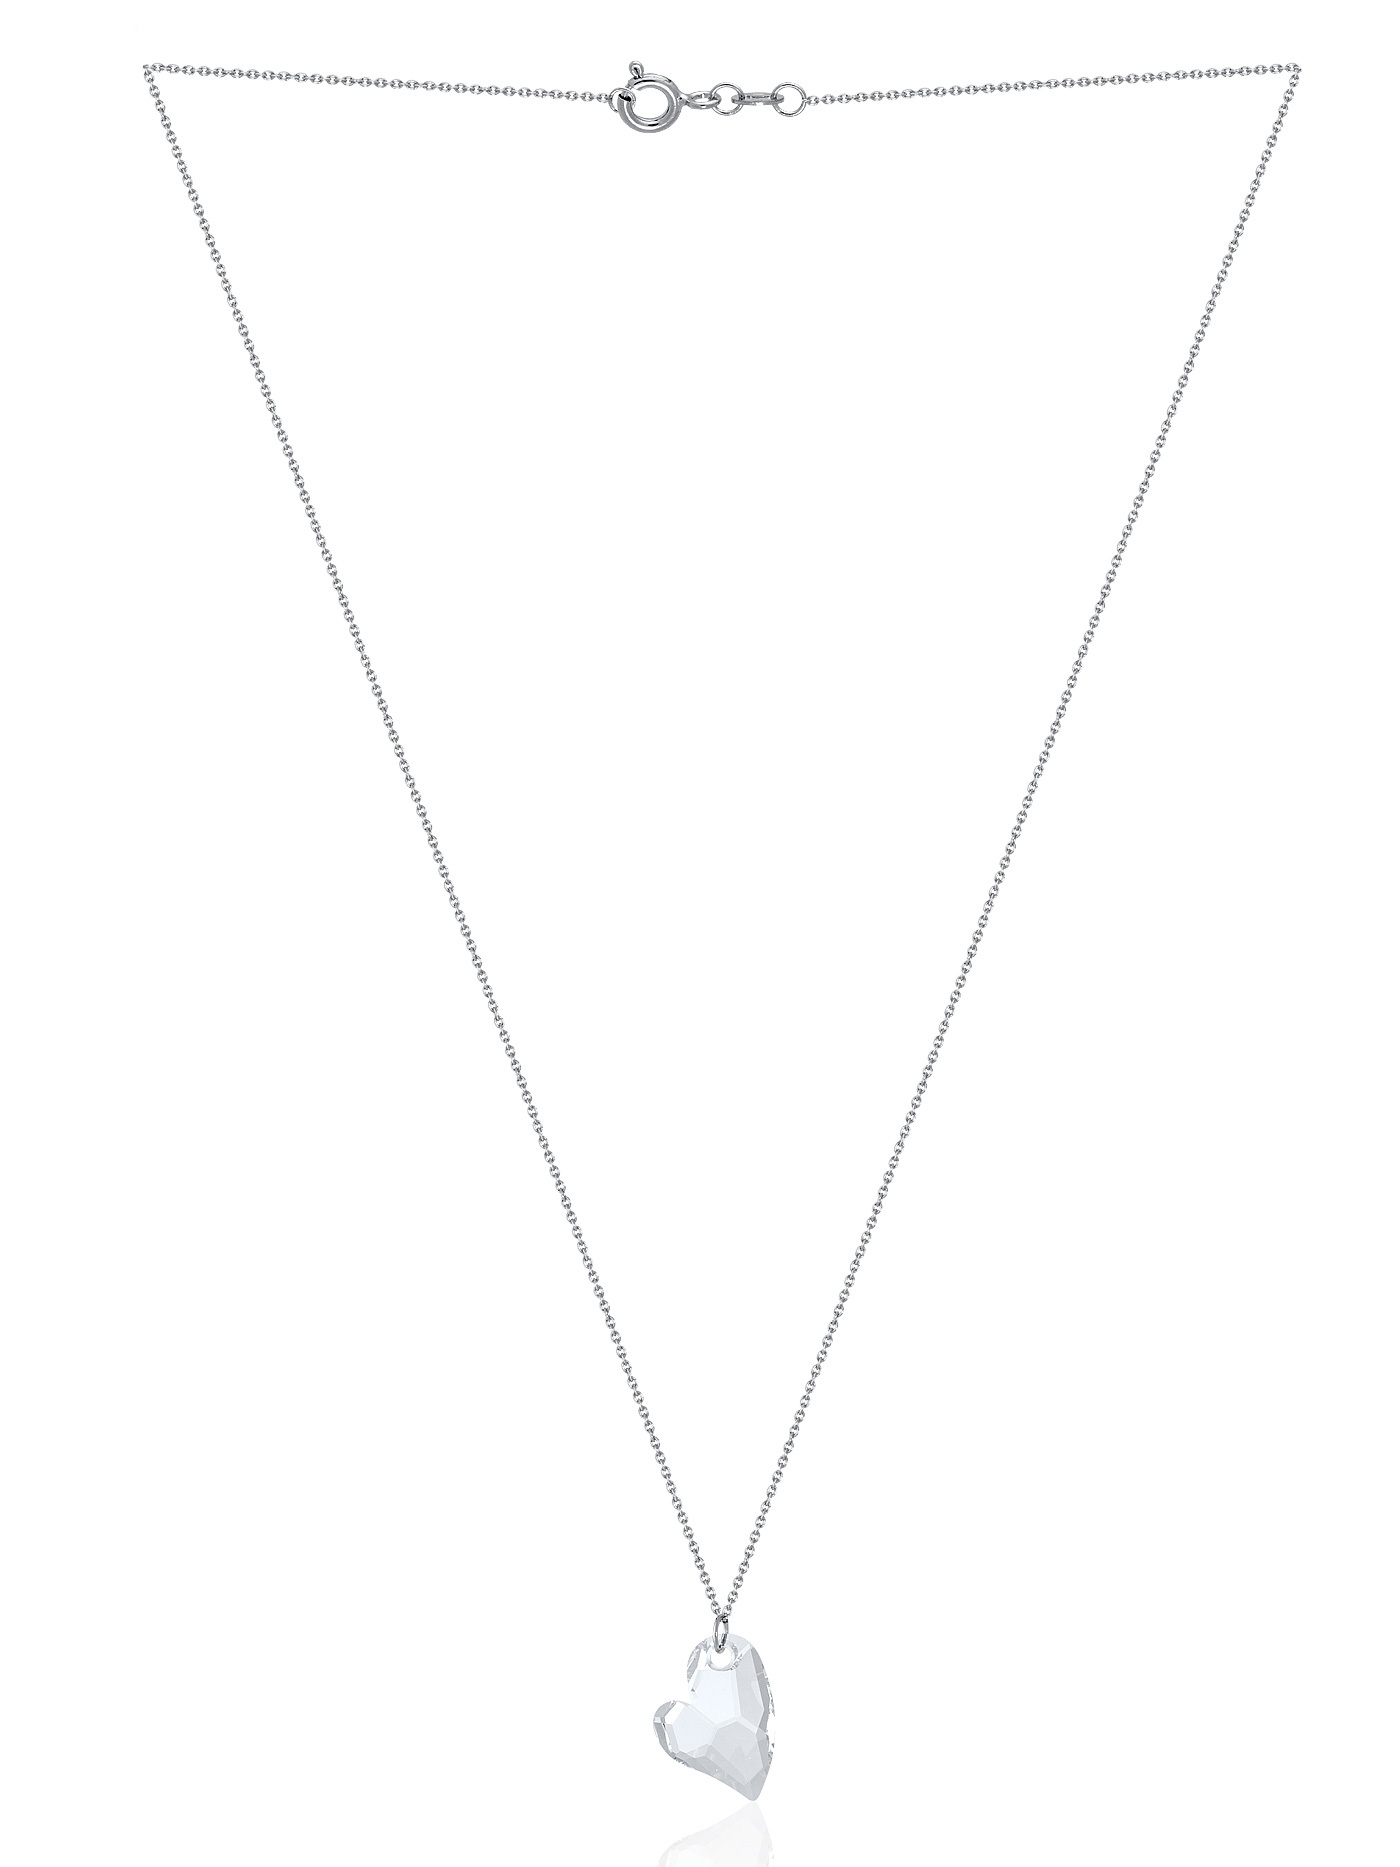 Ювелирная серебряная подвеска с кристаллом Swarovski Сердце - артикул55666087 - купить в интернет-магазине ювелирной бижутерии Lattrice